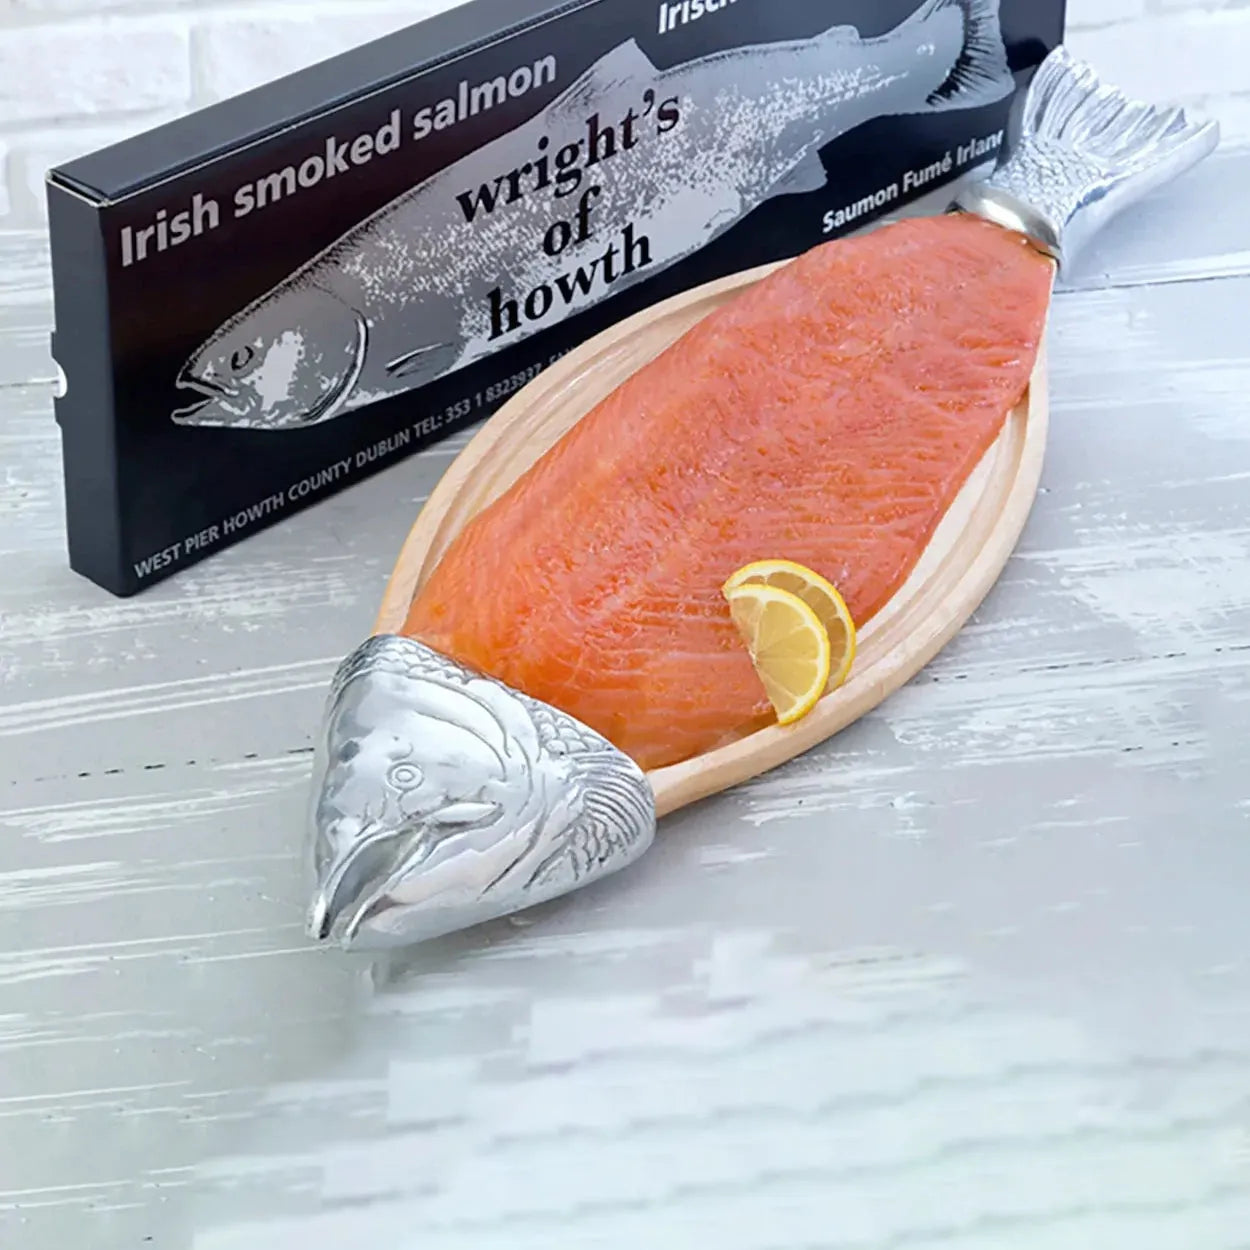 Organic Irish Smoked Salmon Platter - Wrights of Howth